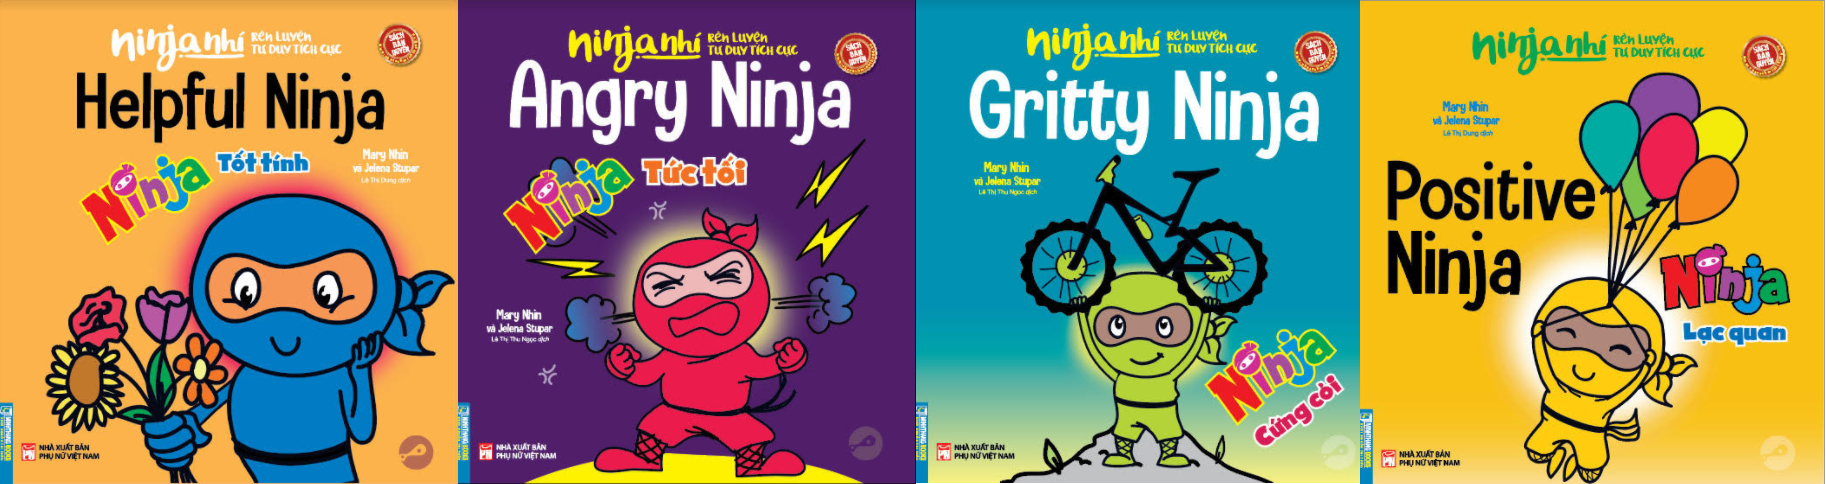 Ninja books in Vietnamese by Mary Nhin